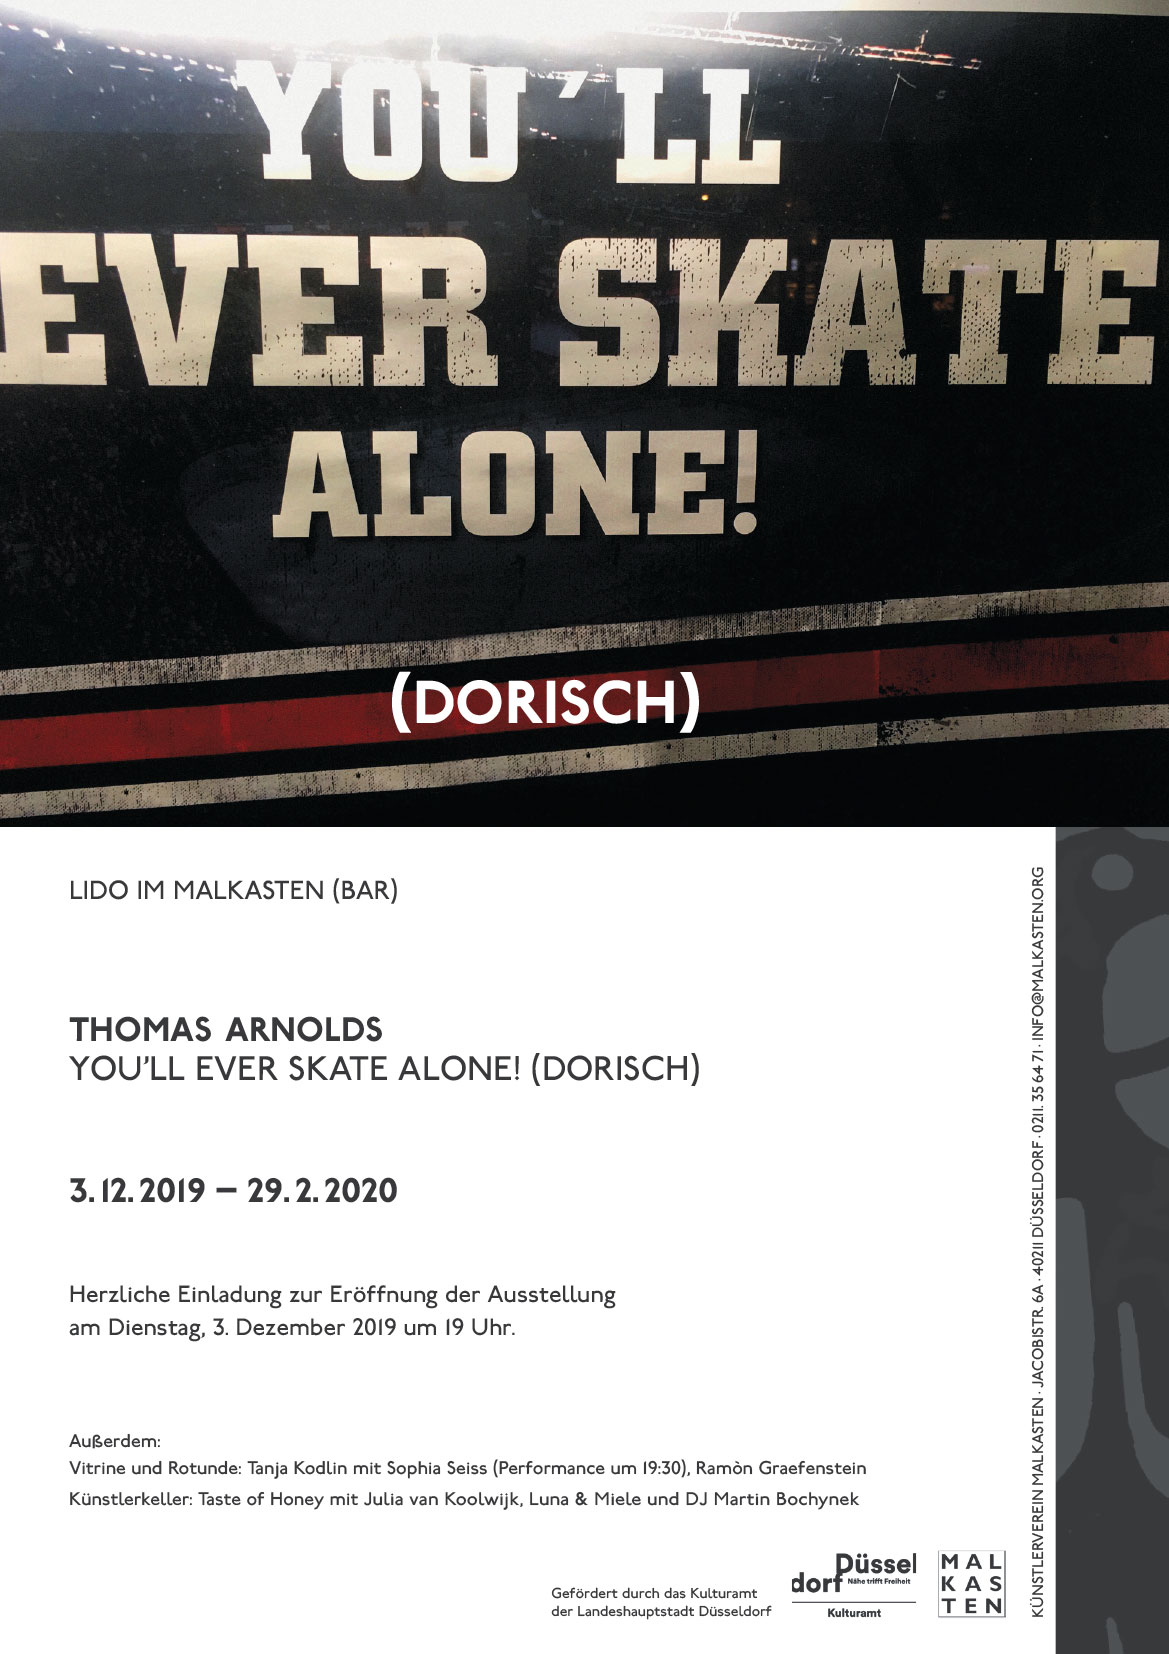 Thomas Arnolds: You'll ever skate alone! (dorisch) at Künstlerverein Malkasten in Düsseldorf